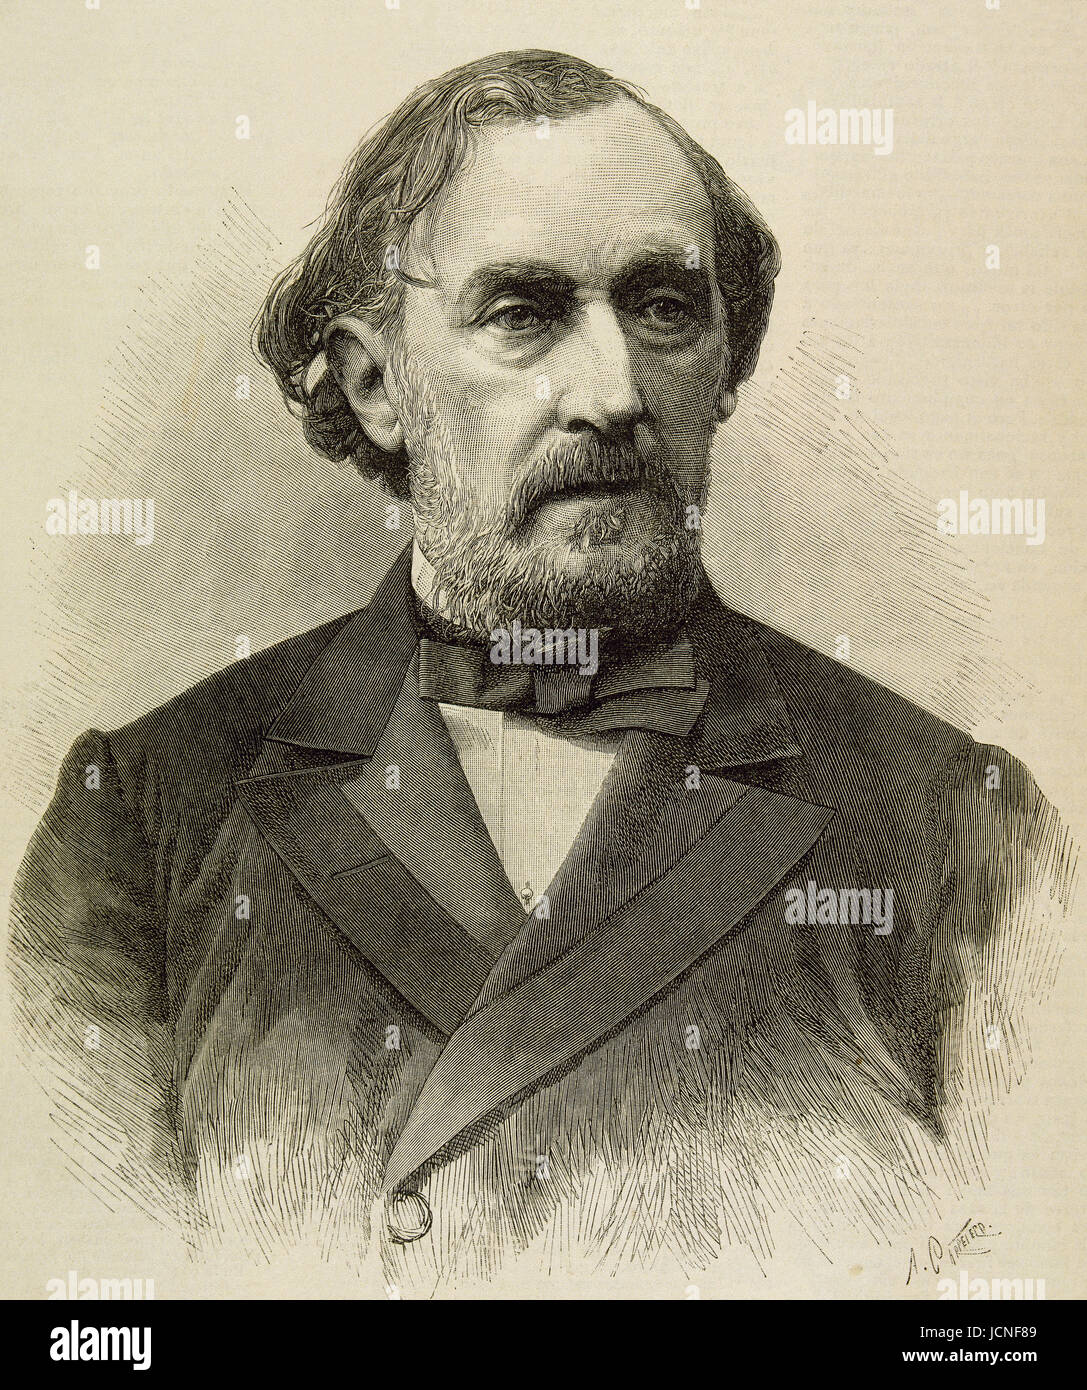 Bartolomé Mitre (1821-1906). Estadista argentino, militar y autor. Presidente de Argentina de 1862 a 1868. Retrato. Grabado. 'L'Ilustración'. Foto de stock